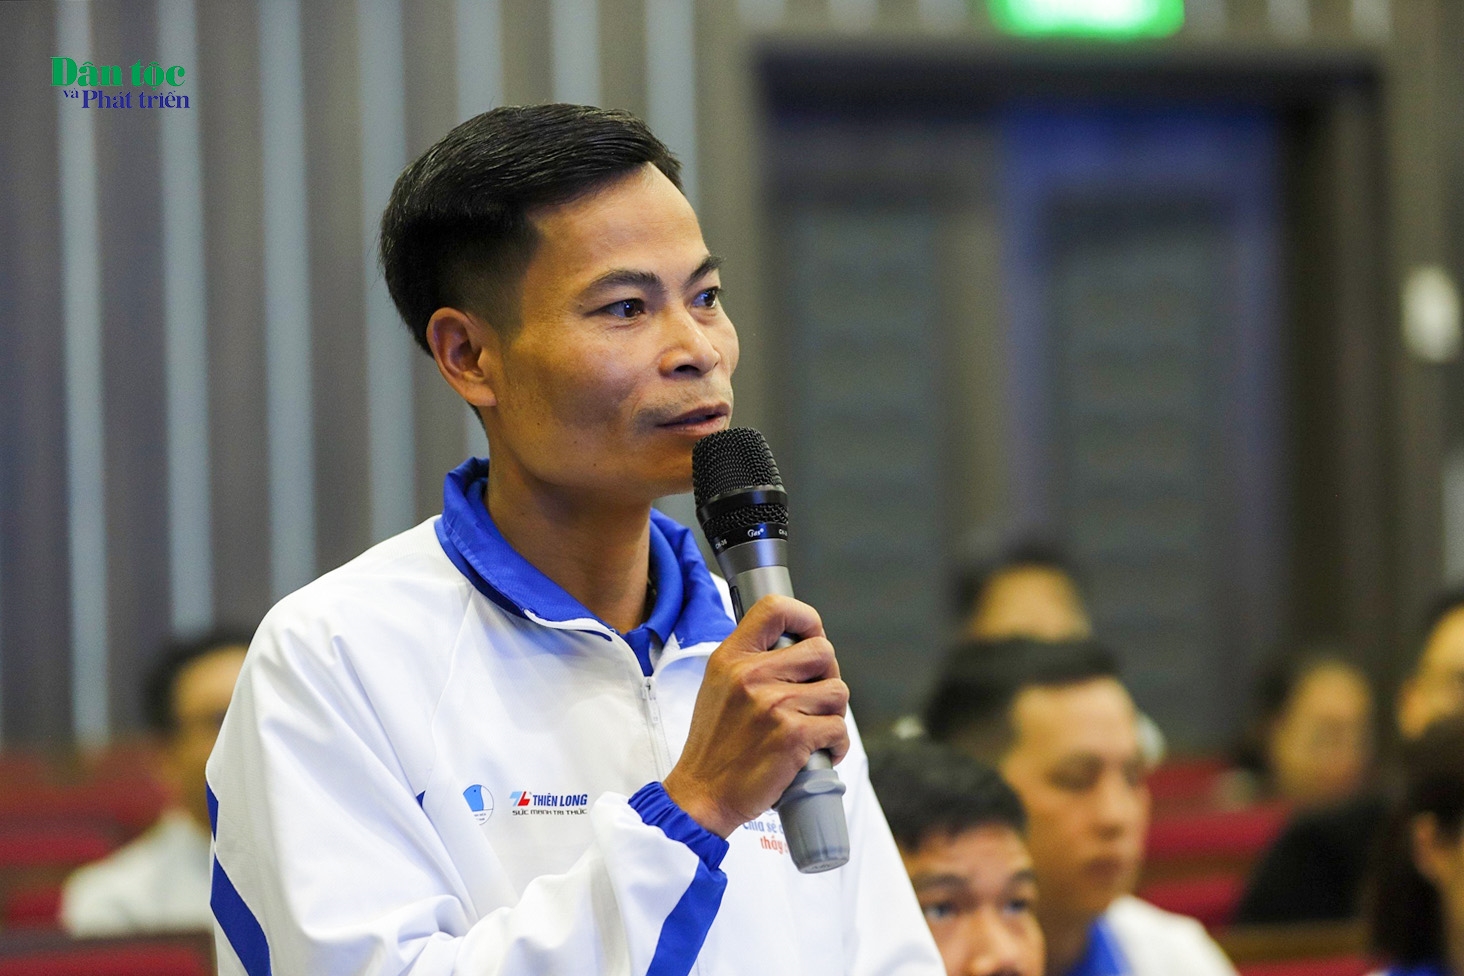 Thầy Lê Văn Thắng - Trường mầm non Thanh Kim - Thanh Bình - Sa Pa tỉnh Lào Cai phát biểu tại buổi gặp mặt